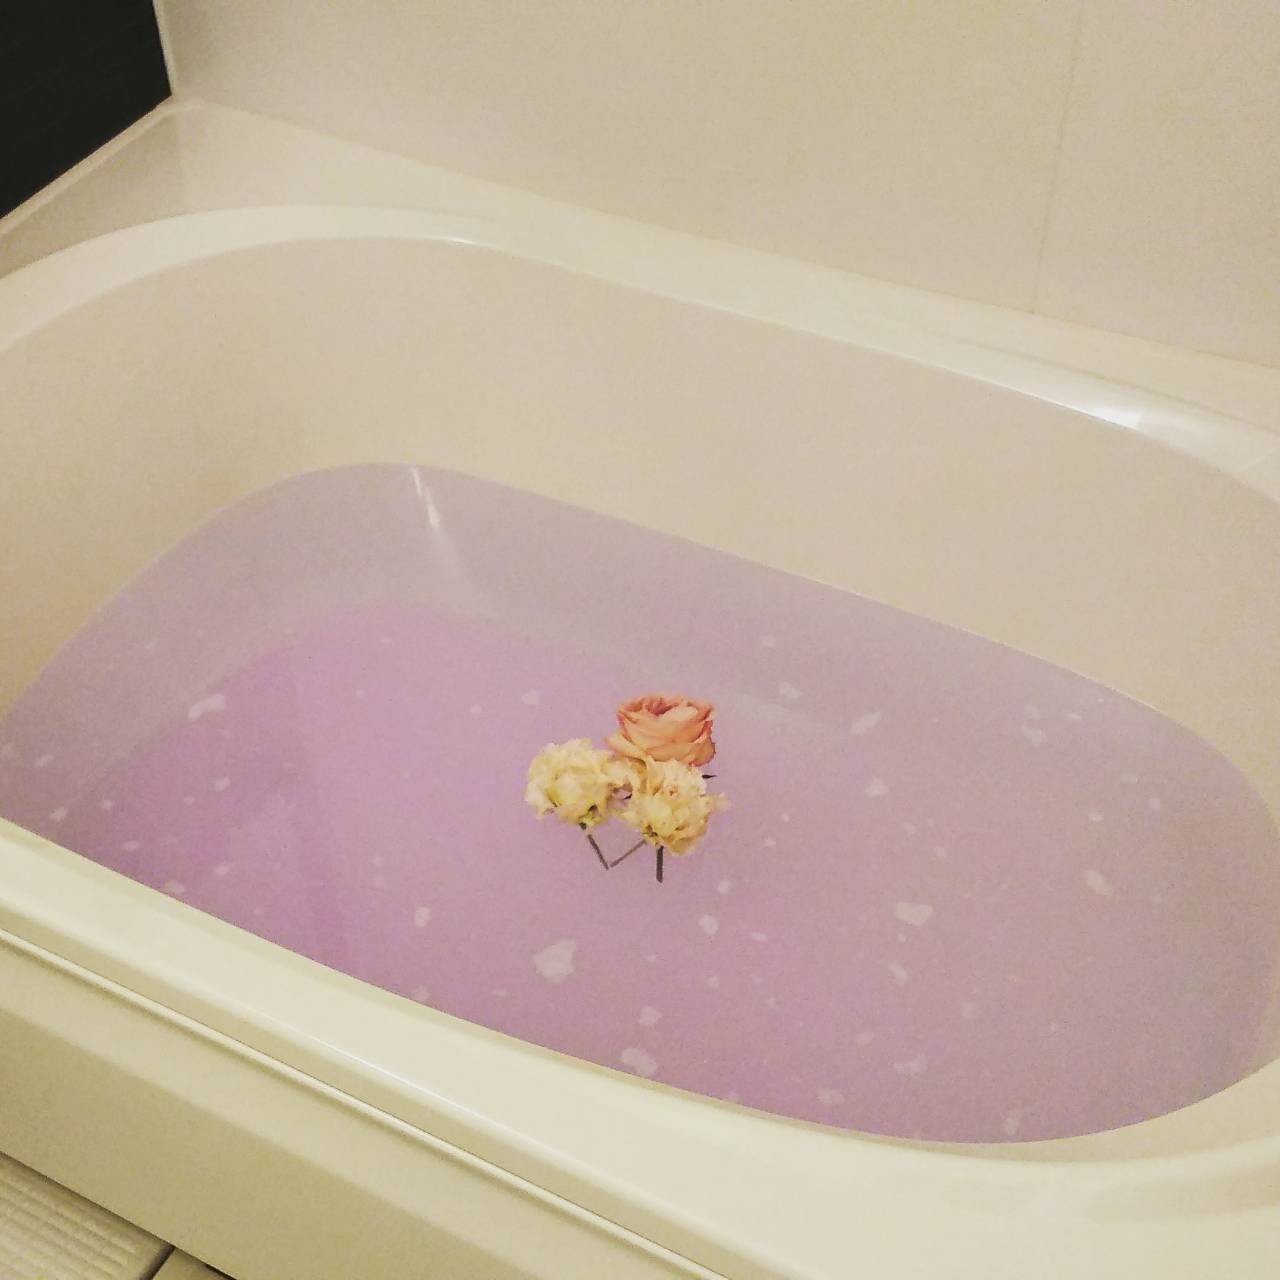 ピンクの湯が張られた白い浴槽